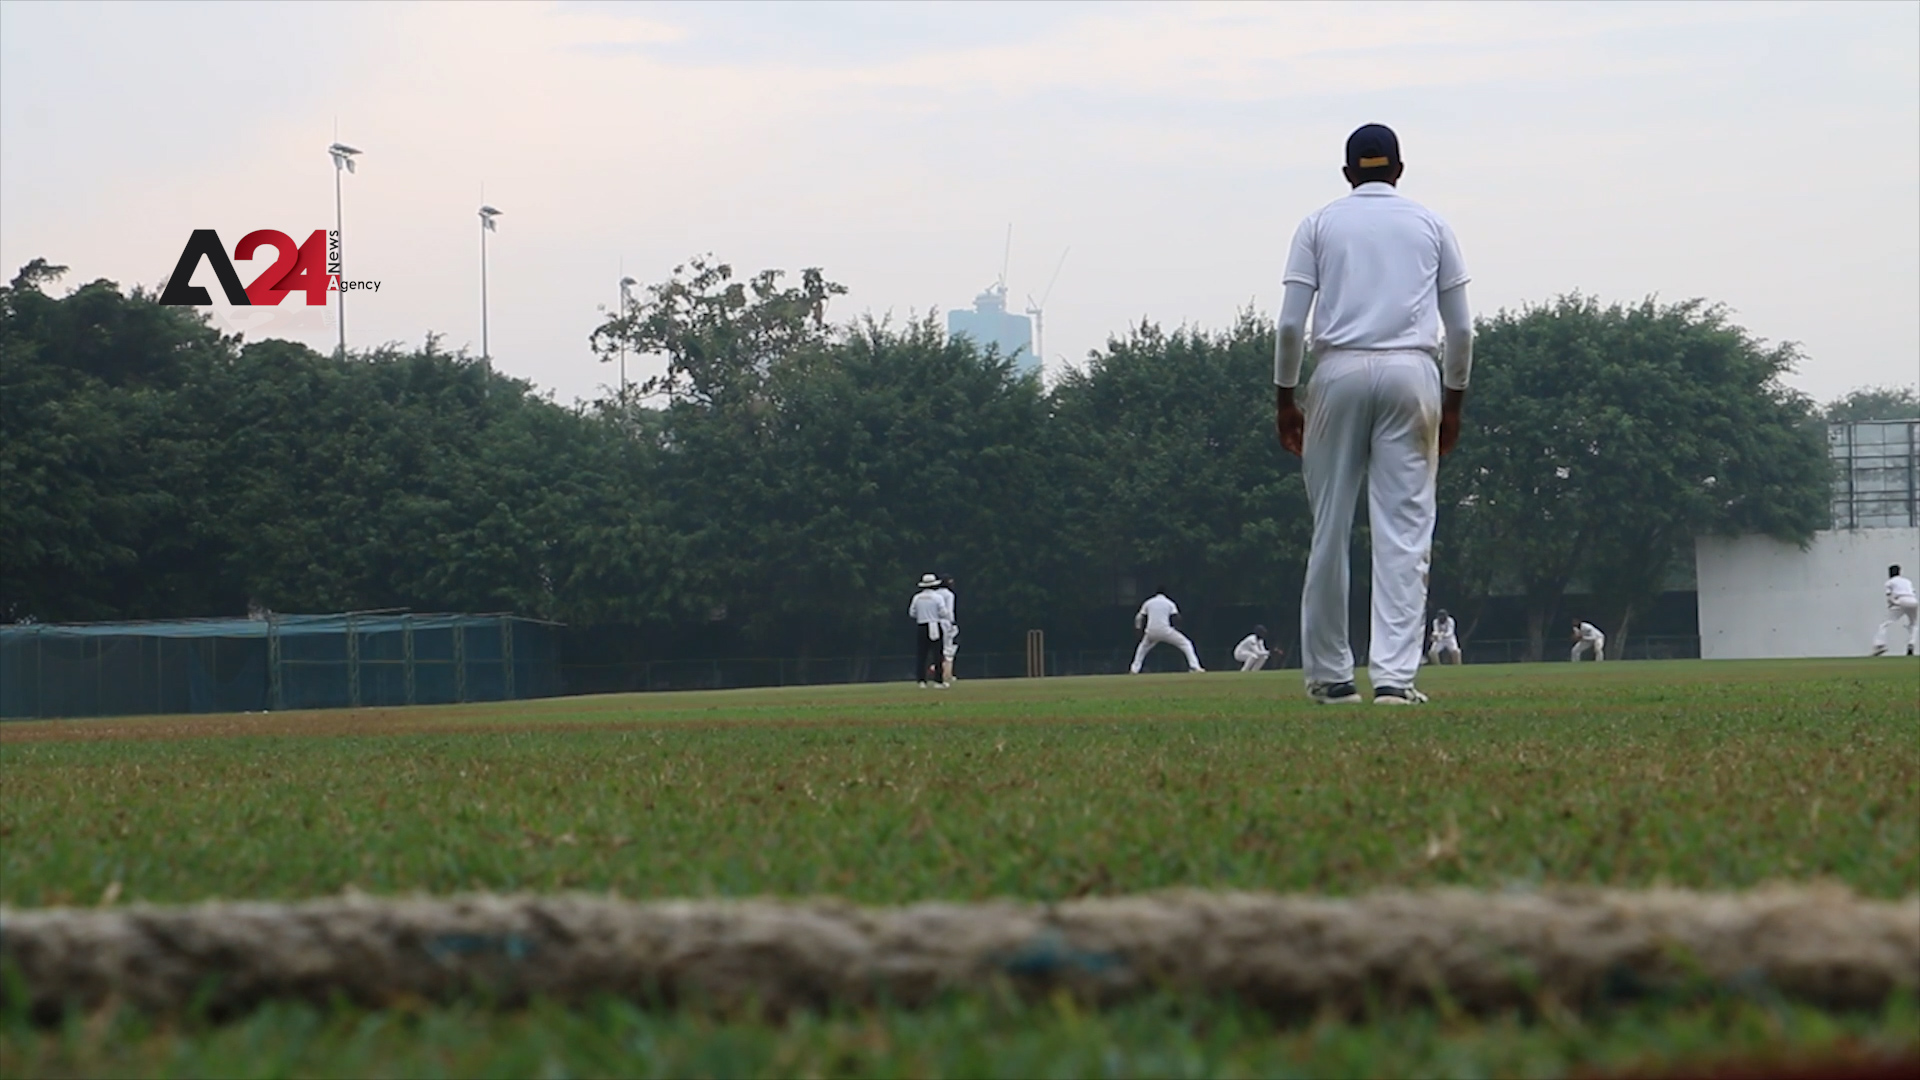 Sri Lanka - Cricket brings sport to underprivileged villagers, schoolchildren